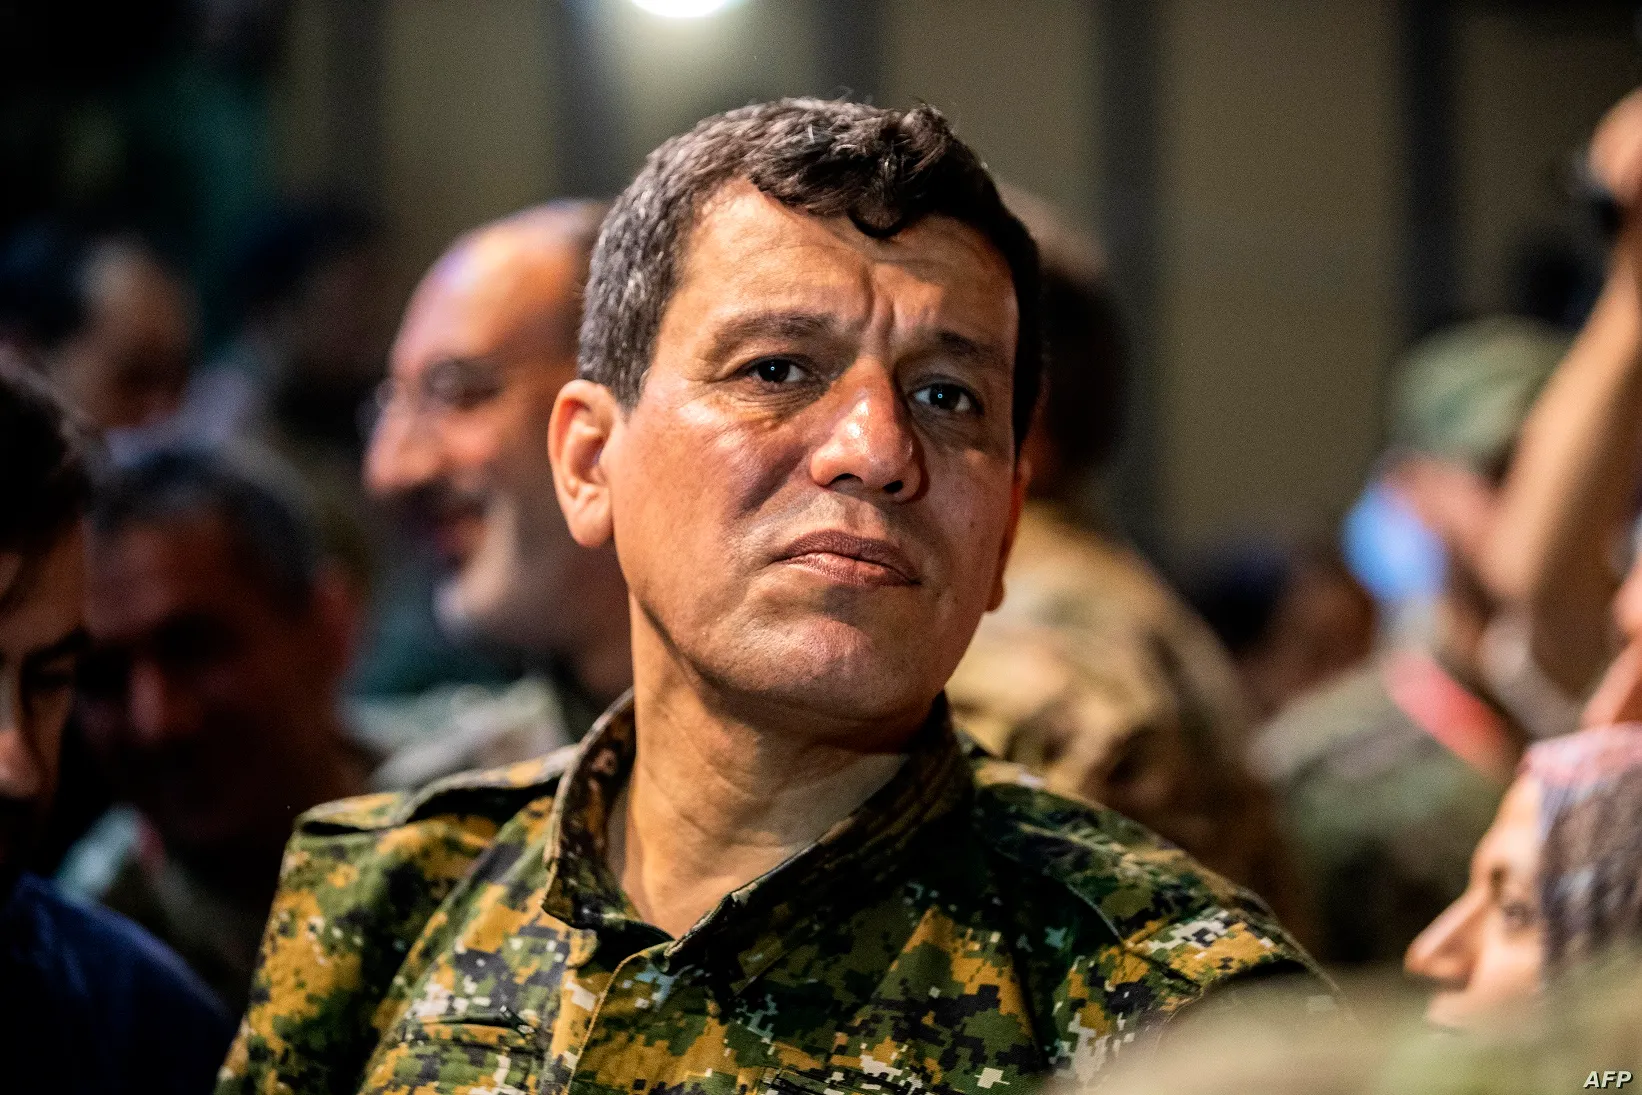 قائد ميليشيا "قسد" يشككك بالموقف الروسي الأمريكي ضد العملية التركية "لاضمانات"